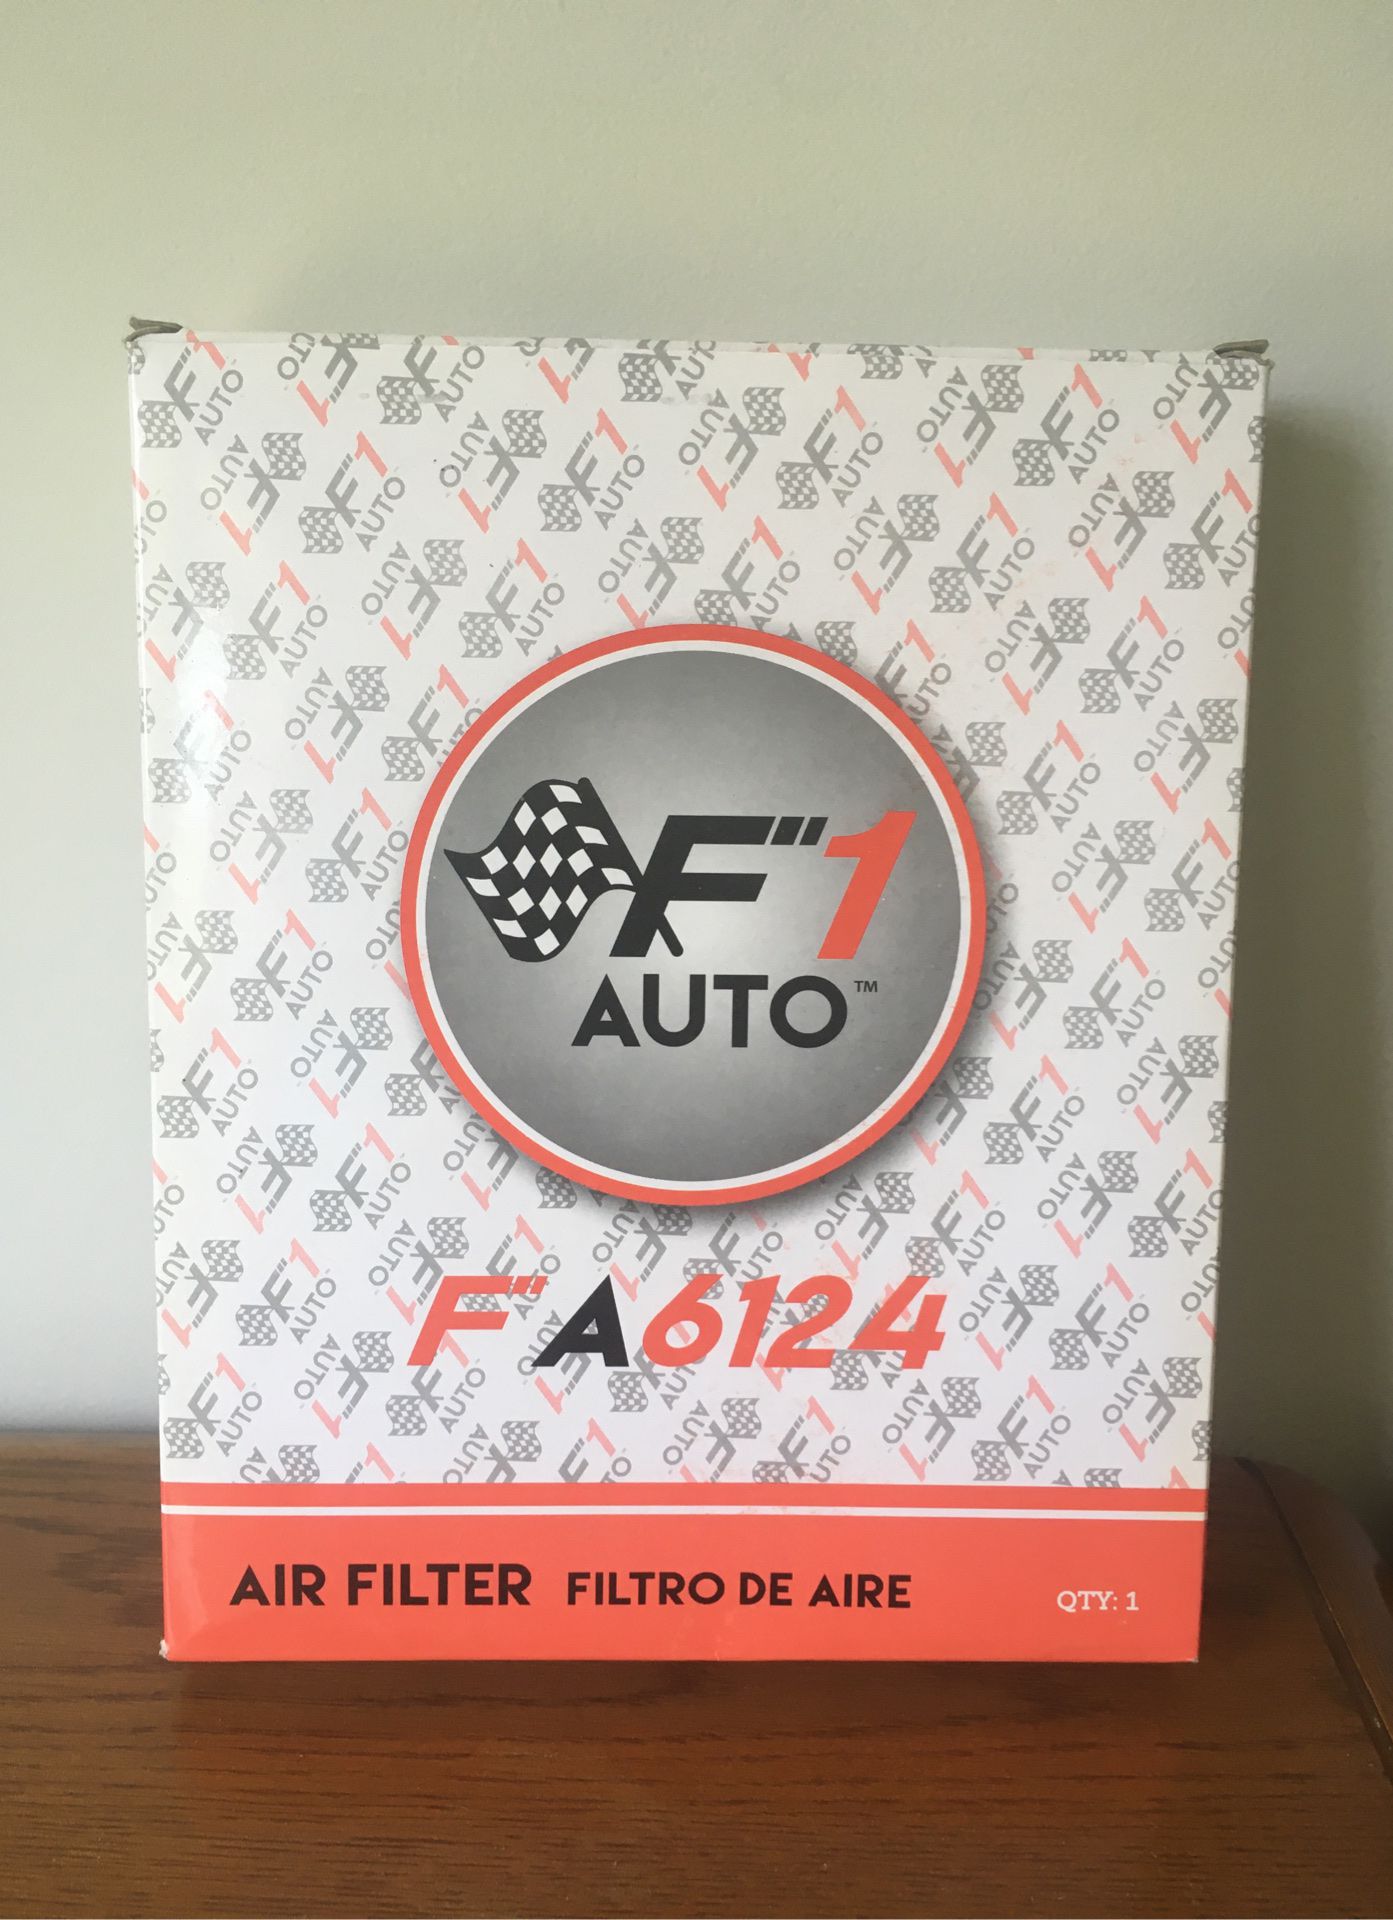 Air Filter for Kia & Hyundai